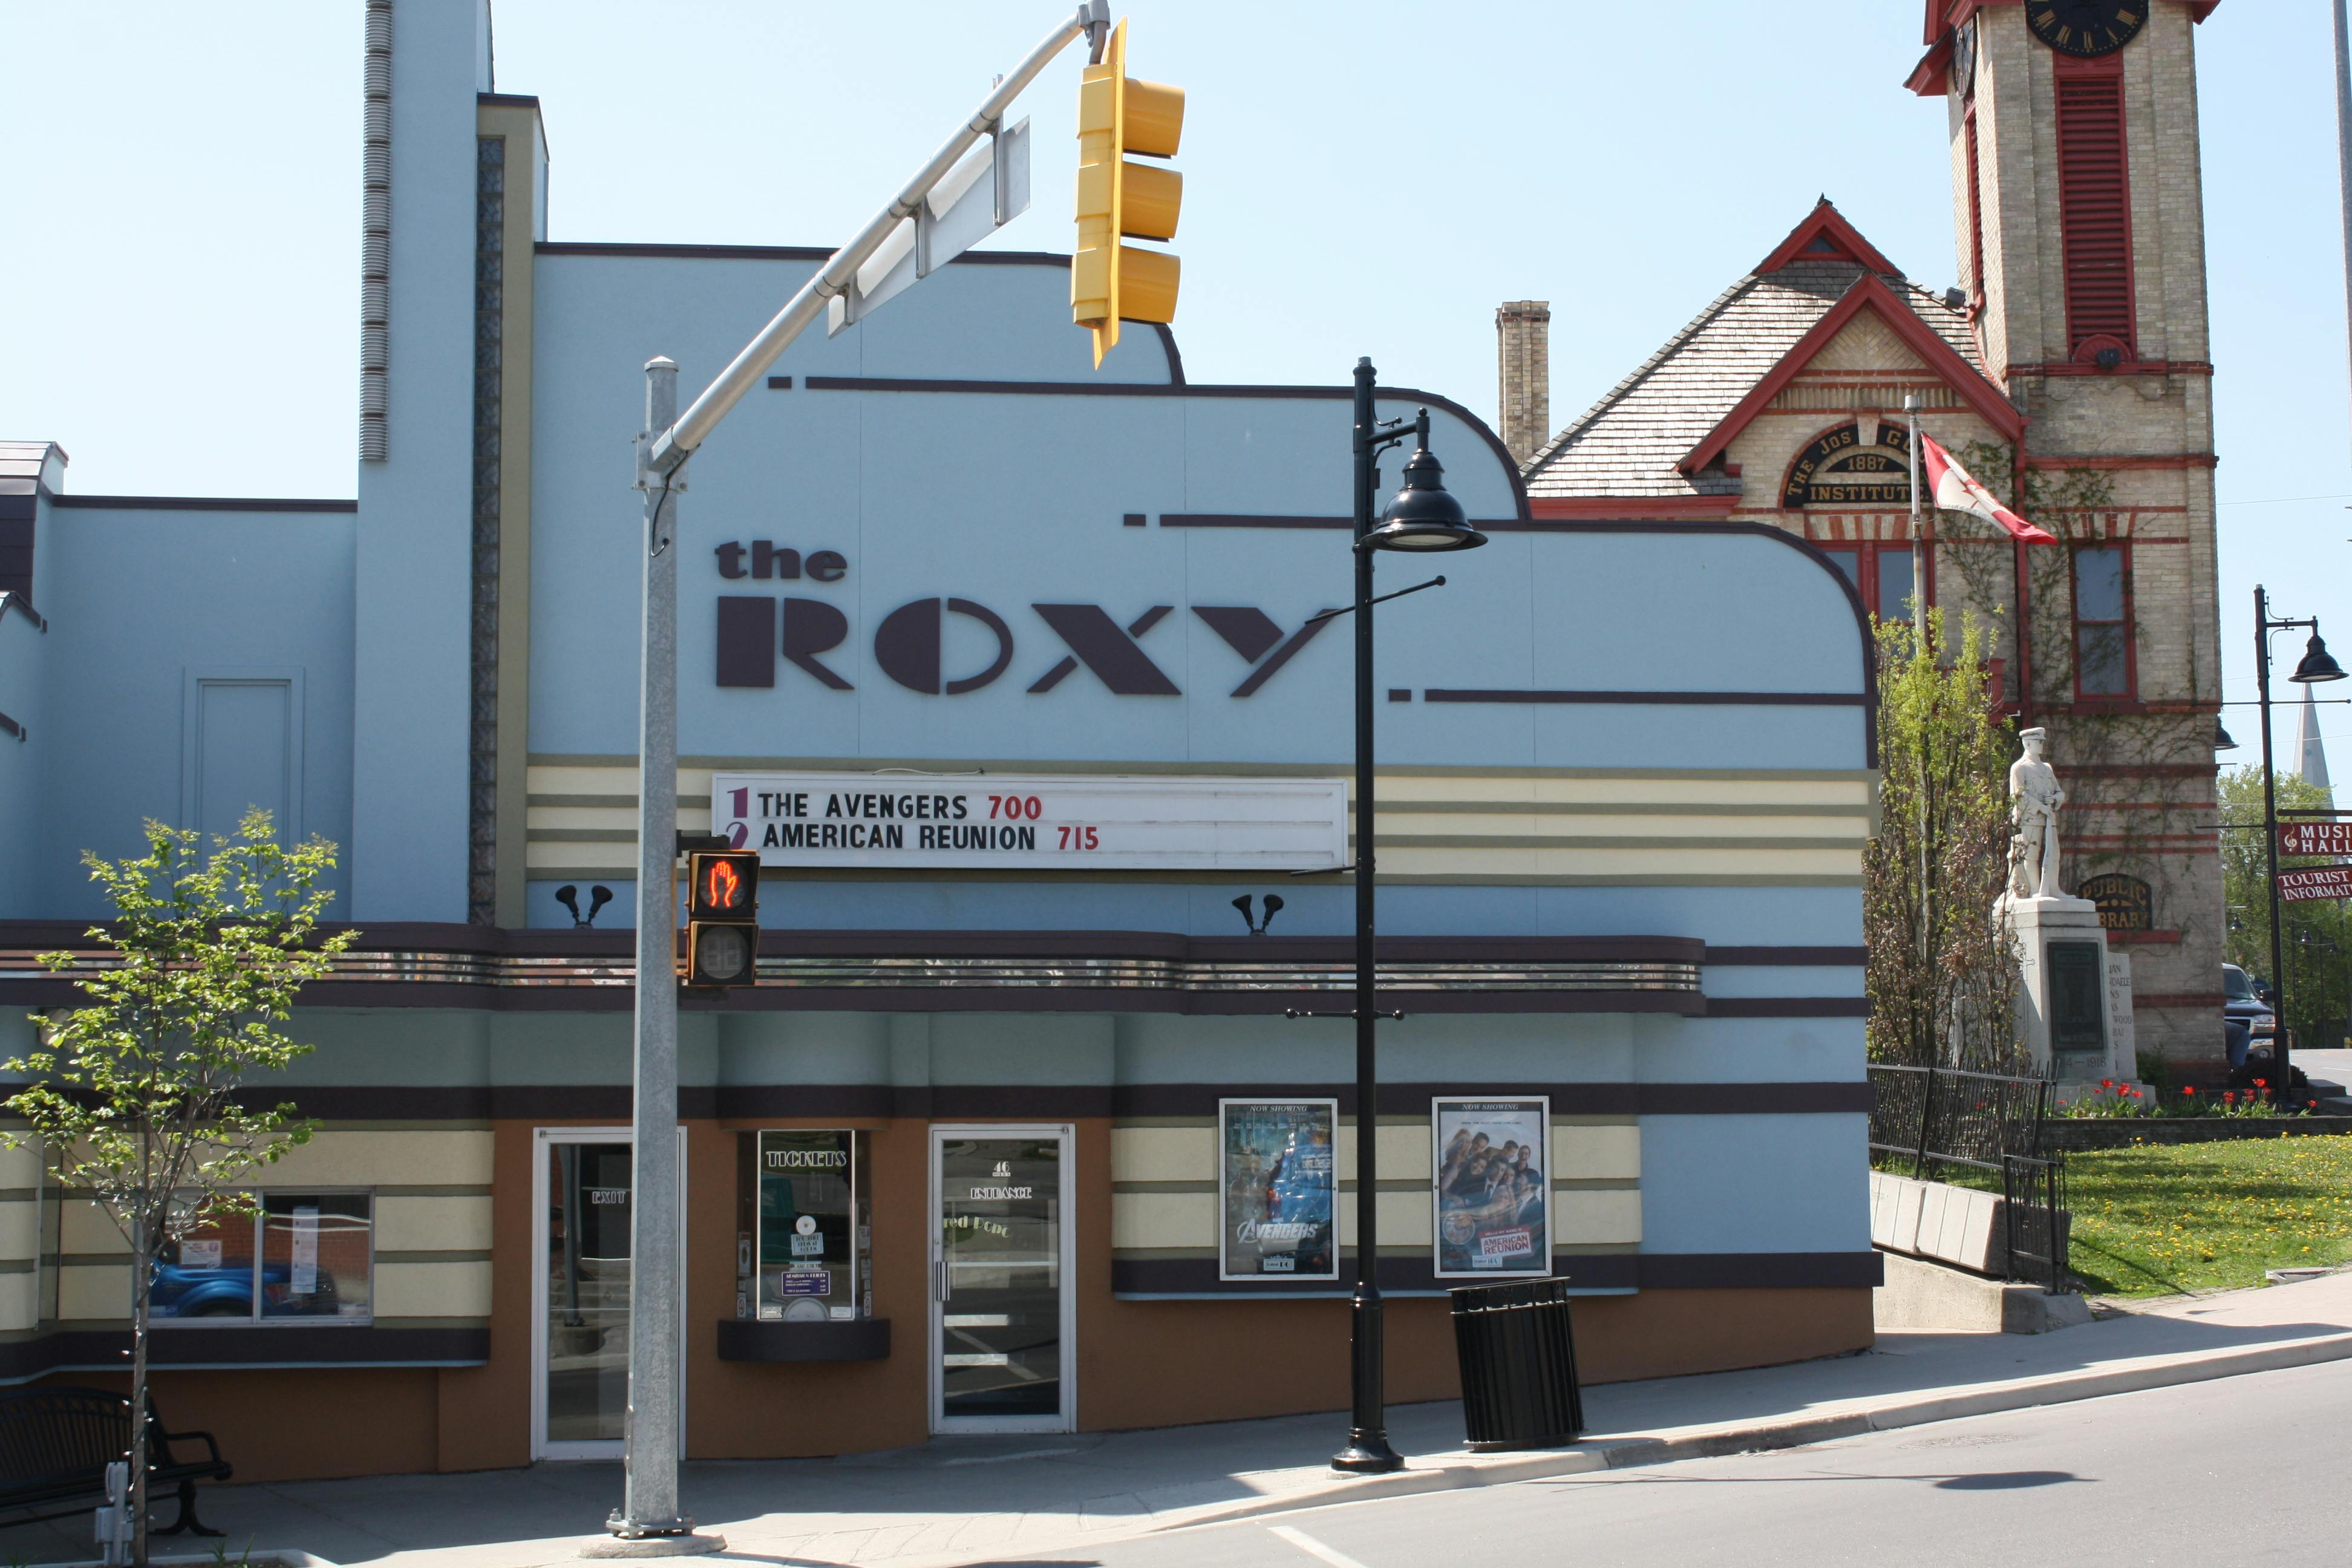 The Roxy Theatre in Uxbridge